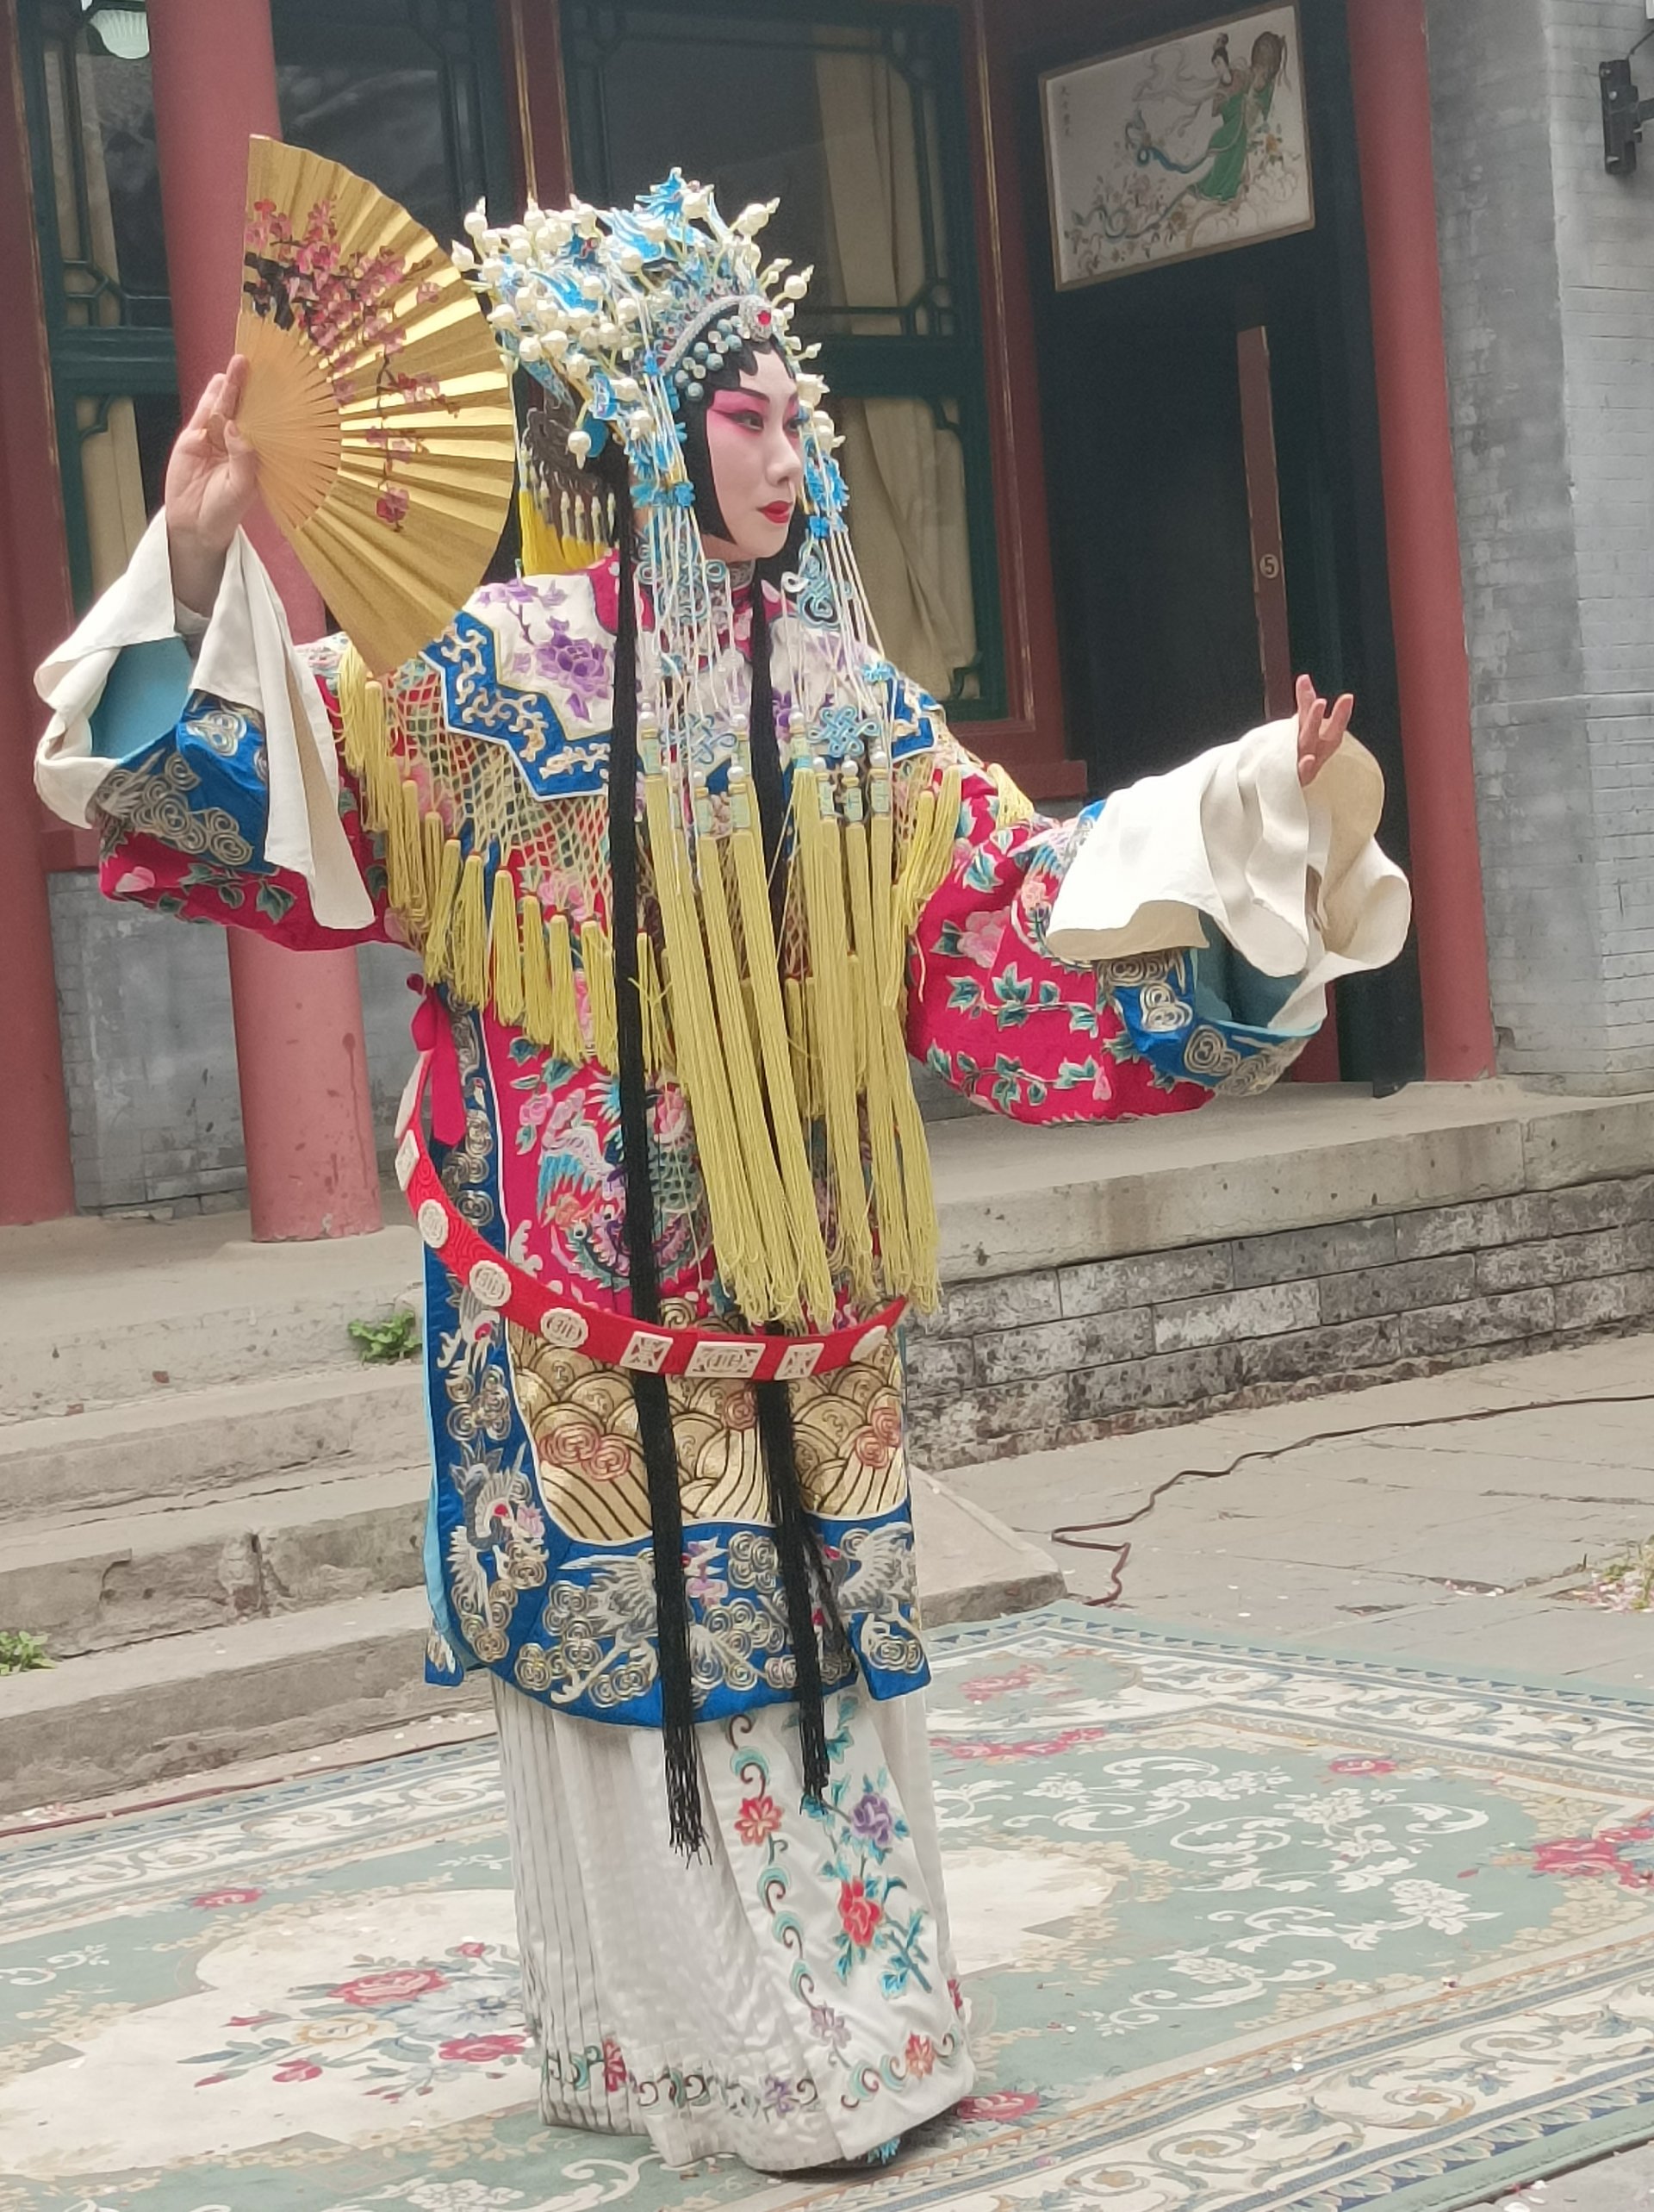 Артистка изпълнява пекинска опера - традиционен китайски театър, който съчетава музика, песни, пантомима, танци и акробатика